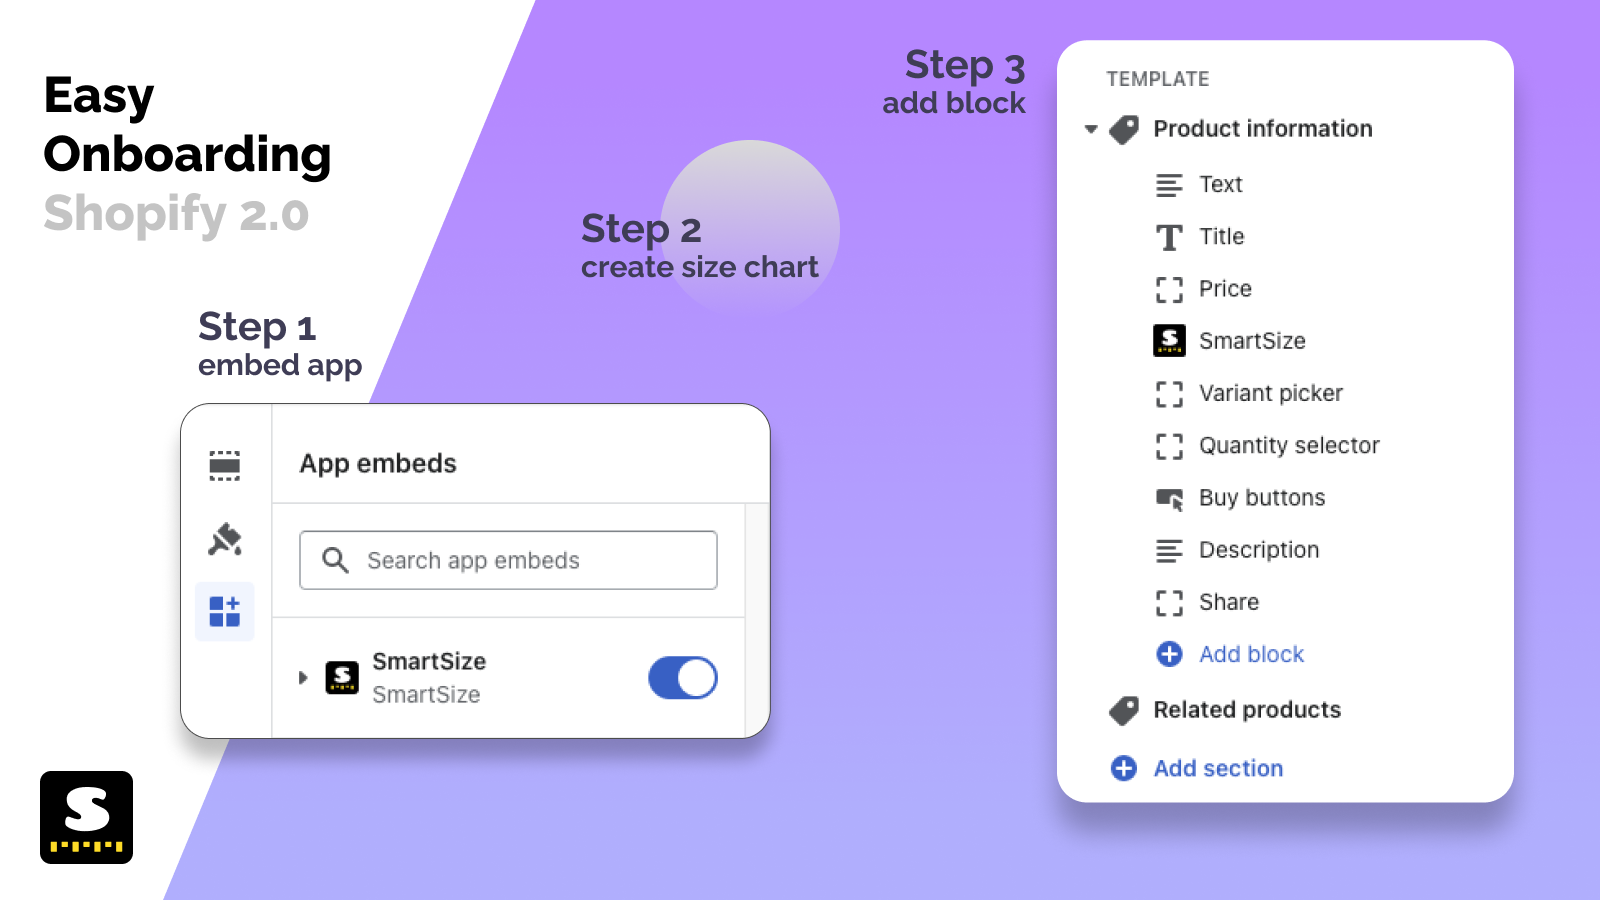 Kompatibel mit Shopify 2.0. Einfache Einrichtung über Add-Block